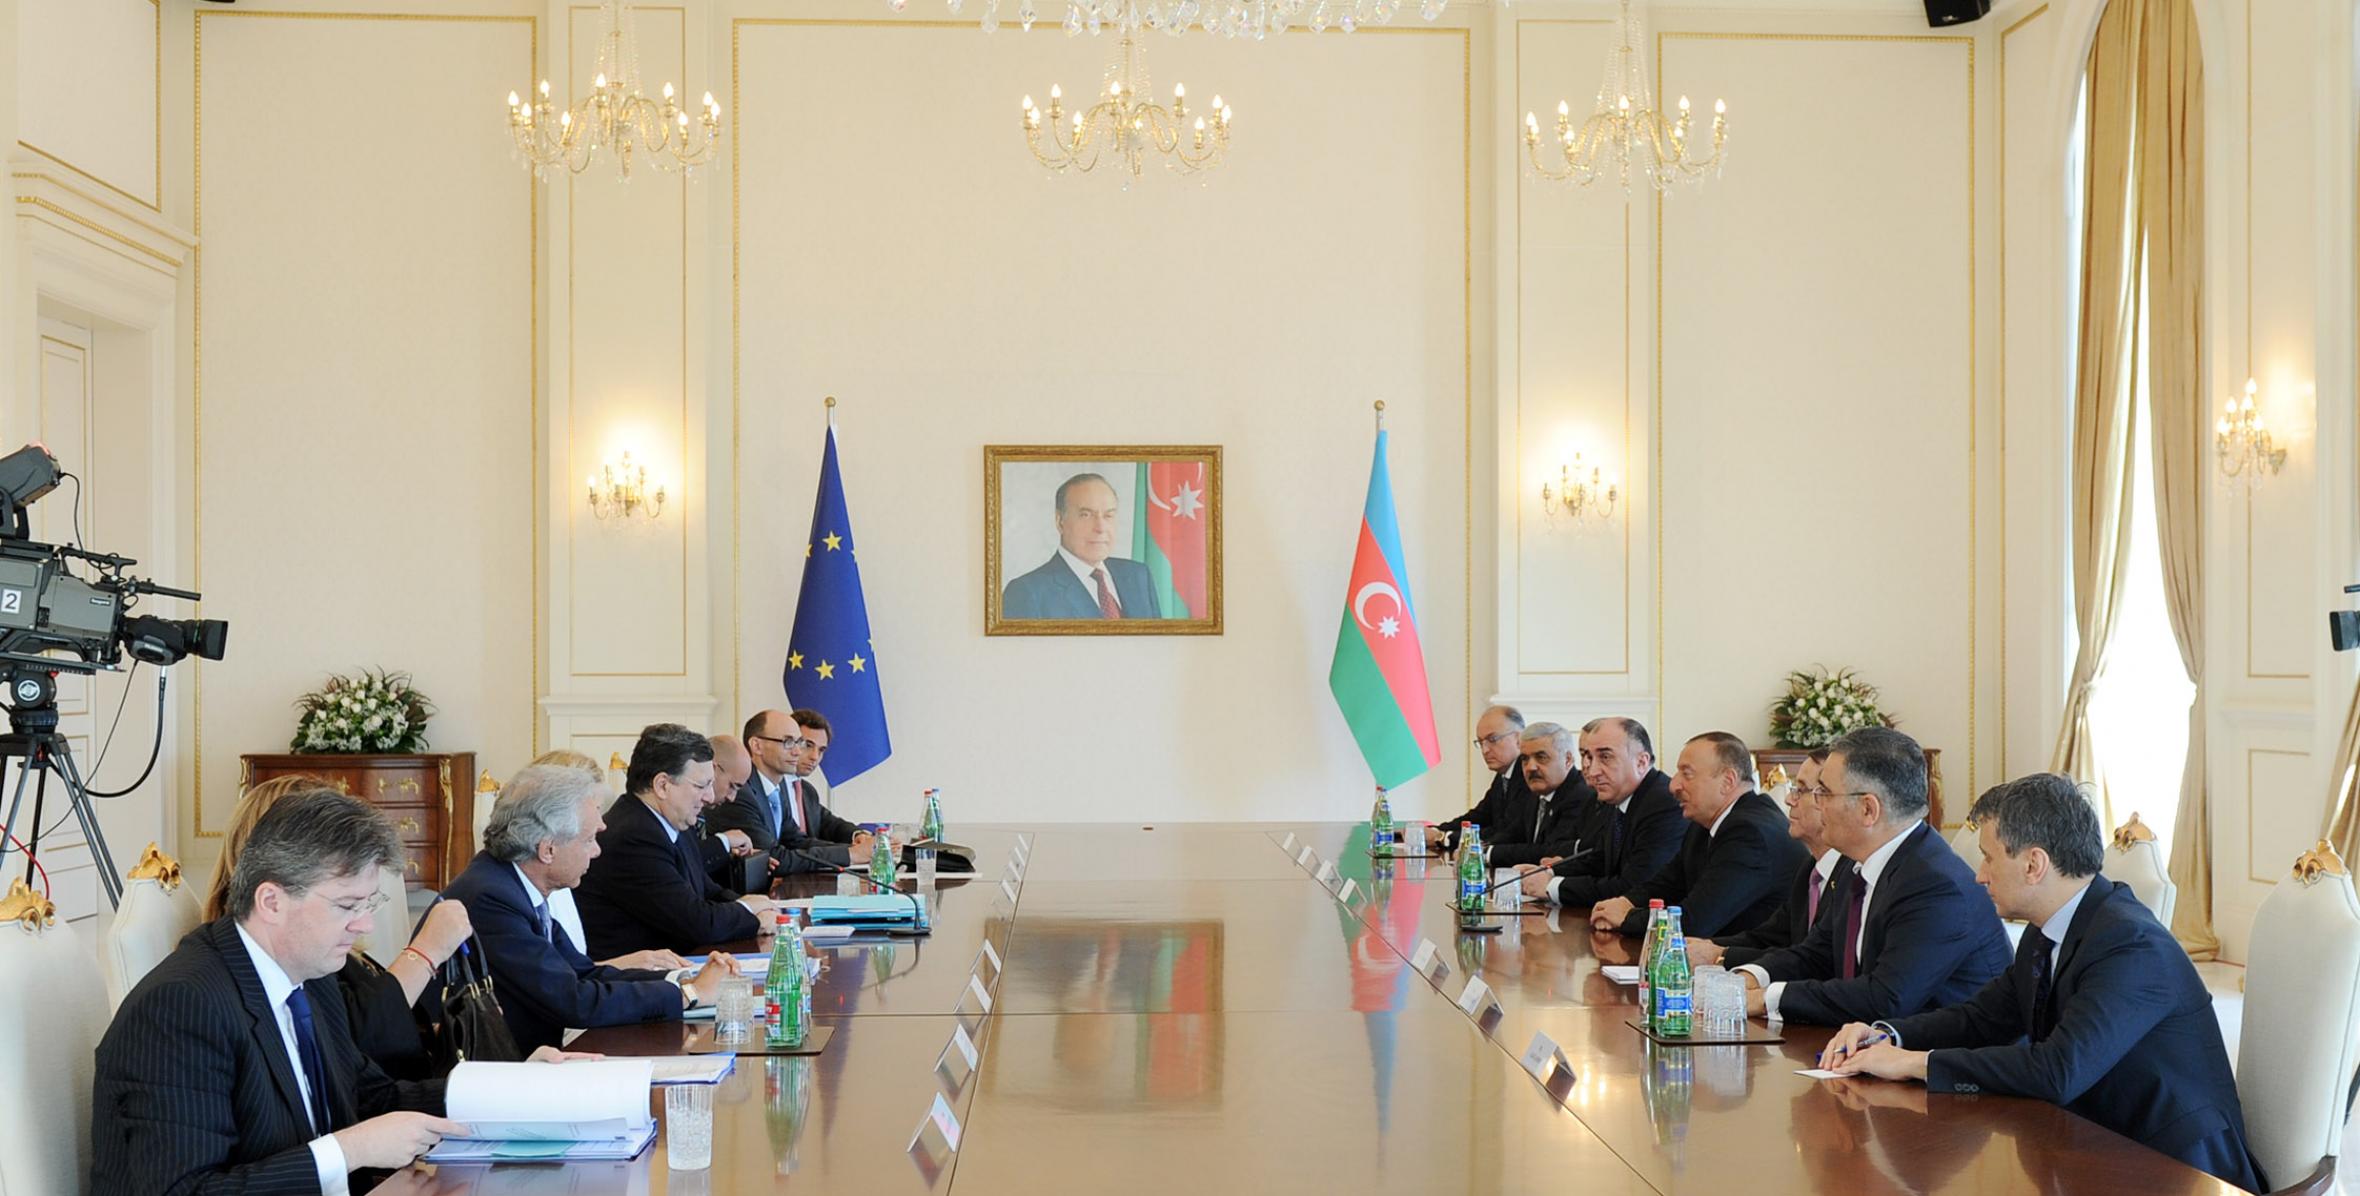 Ильхама Алиева и председателя Европейской комиссии Жозе Мануэла Баррозу в расширенном составе